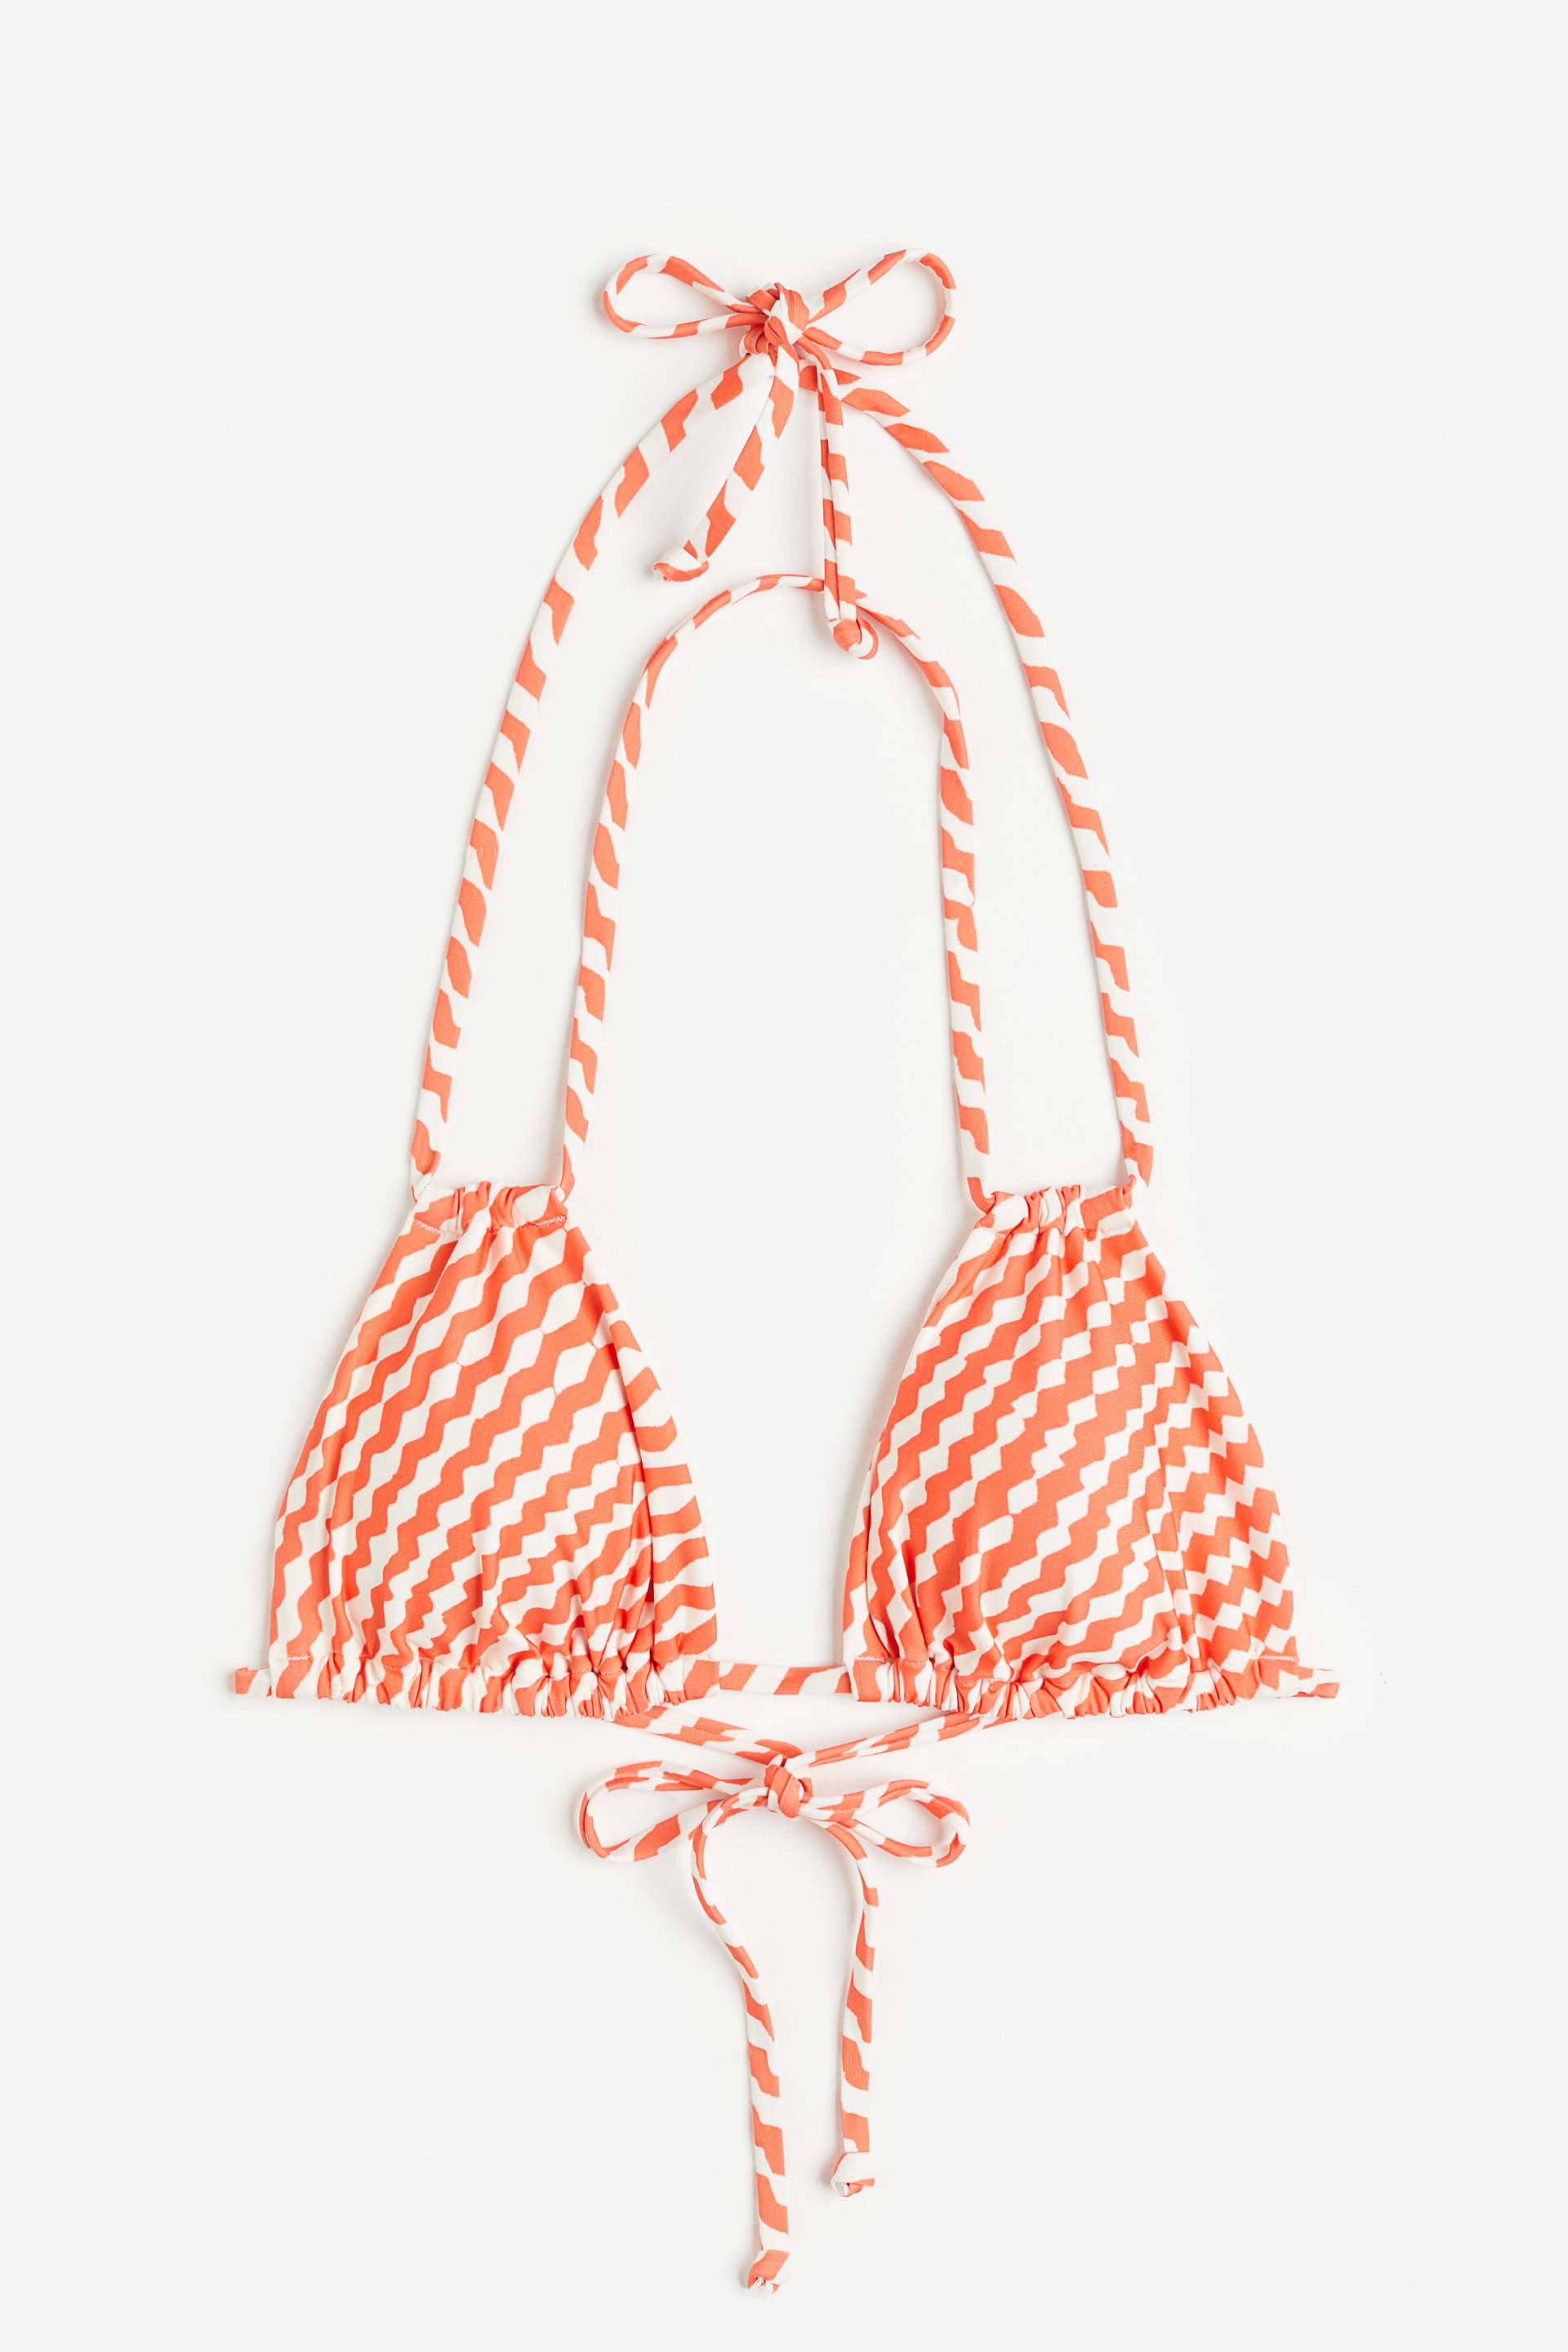 H&M Wattiertes Triangel-Bikinitop Orange/Weiß gemustert, Bikini-Oberteil in Größe 38. Farbe: Orange/white patterned von H&M